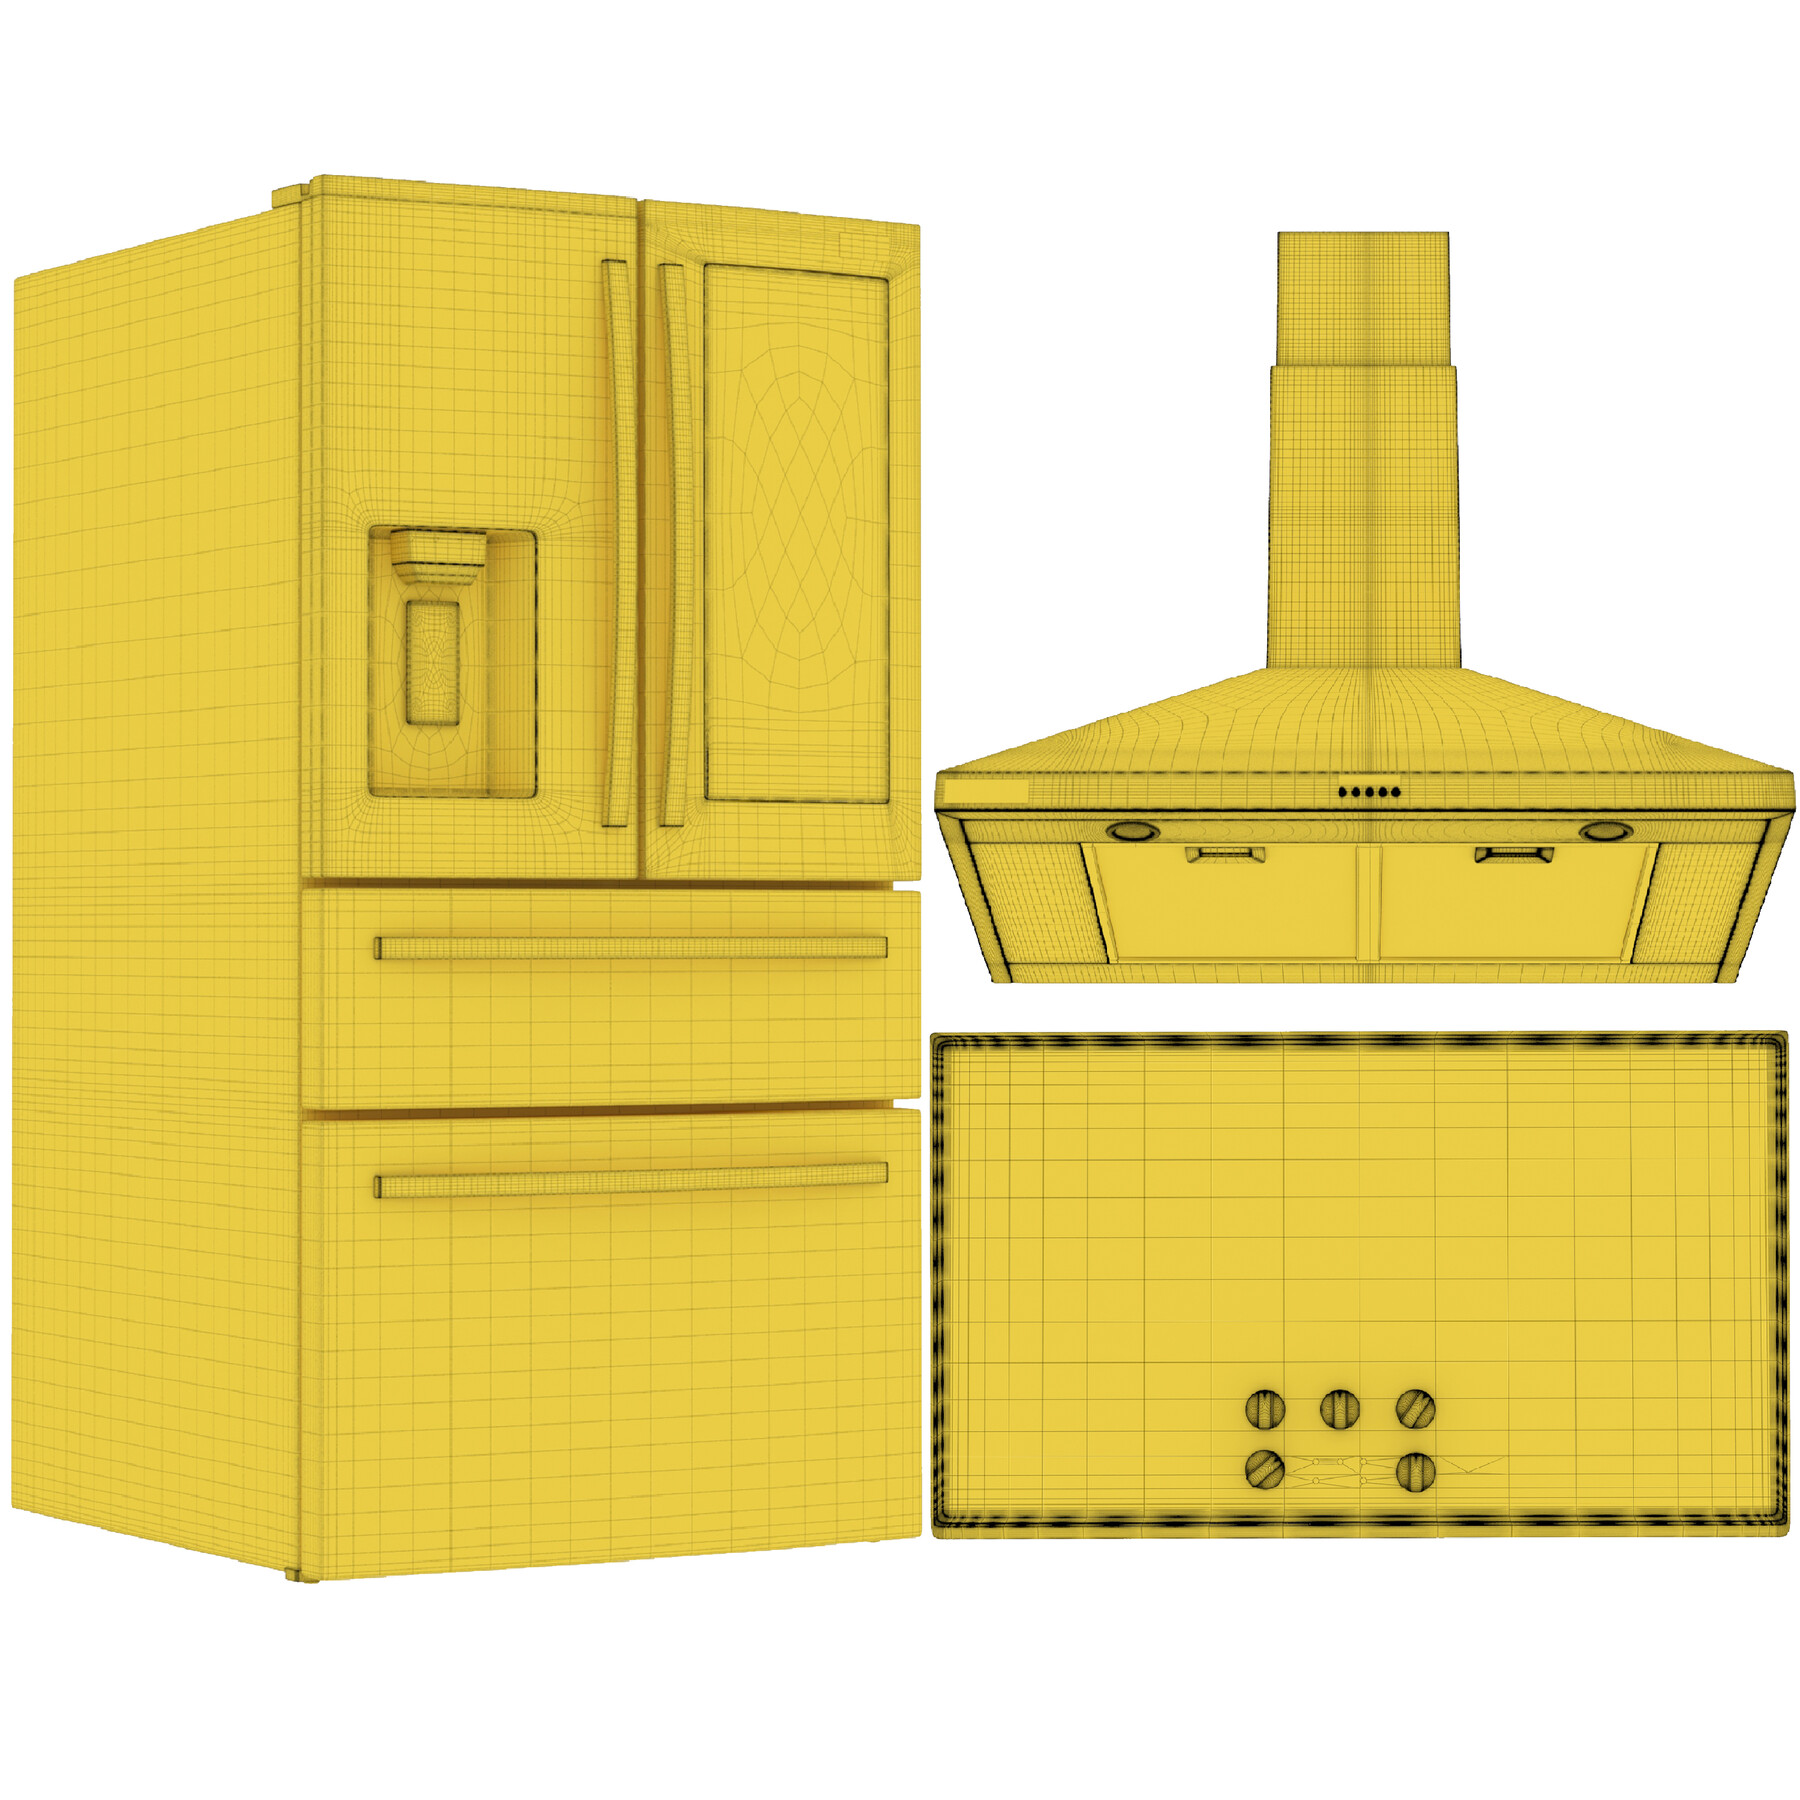 artstation-samsung-kitchen-appliances-vol-1-resources